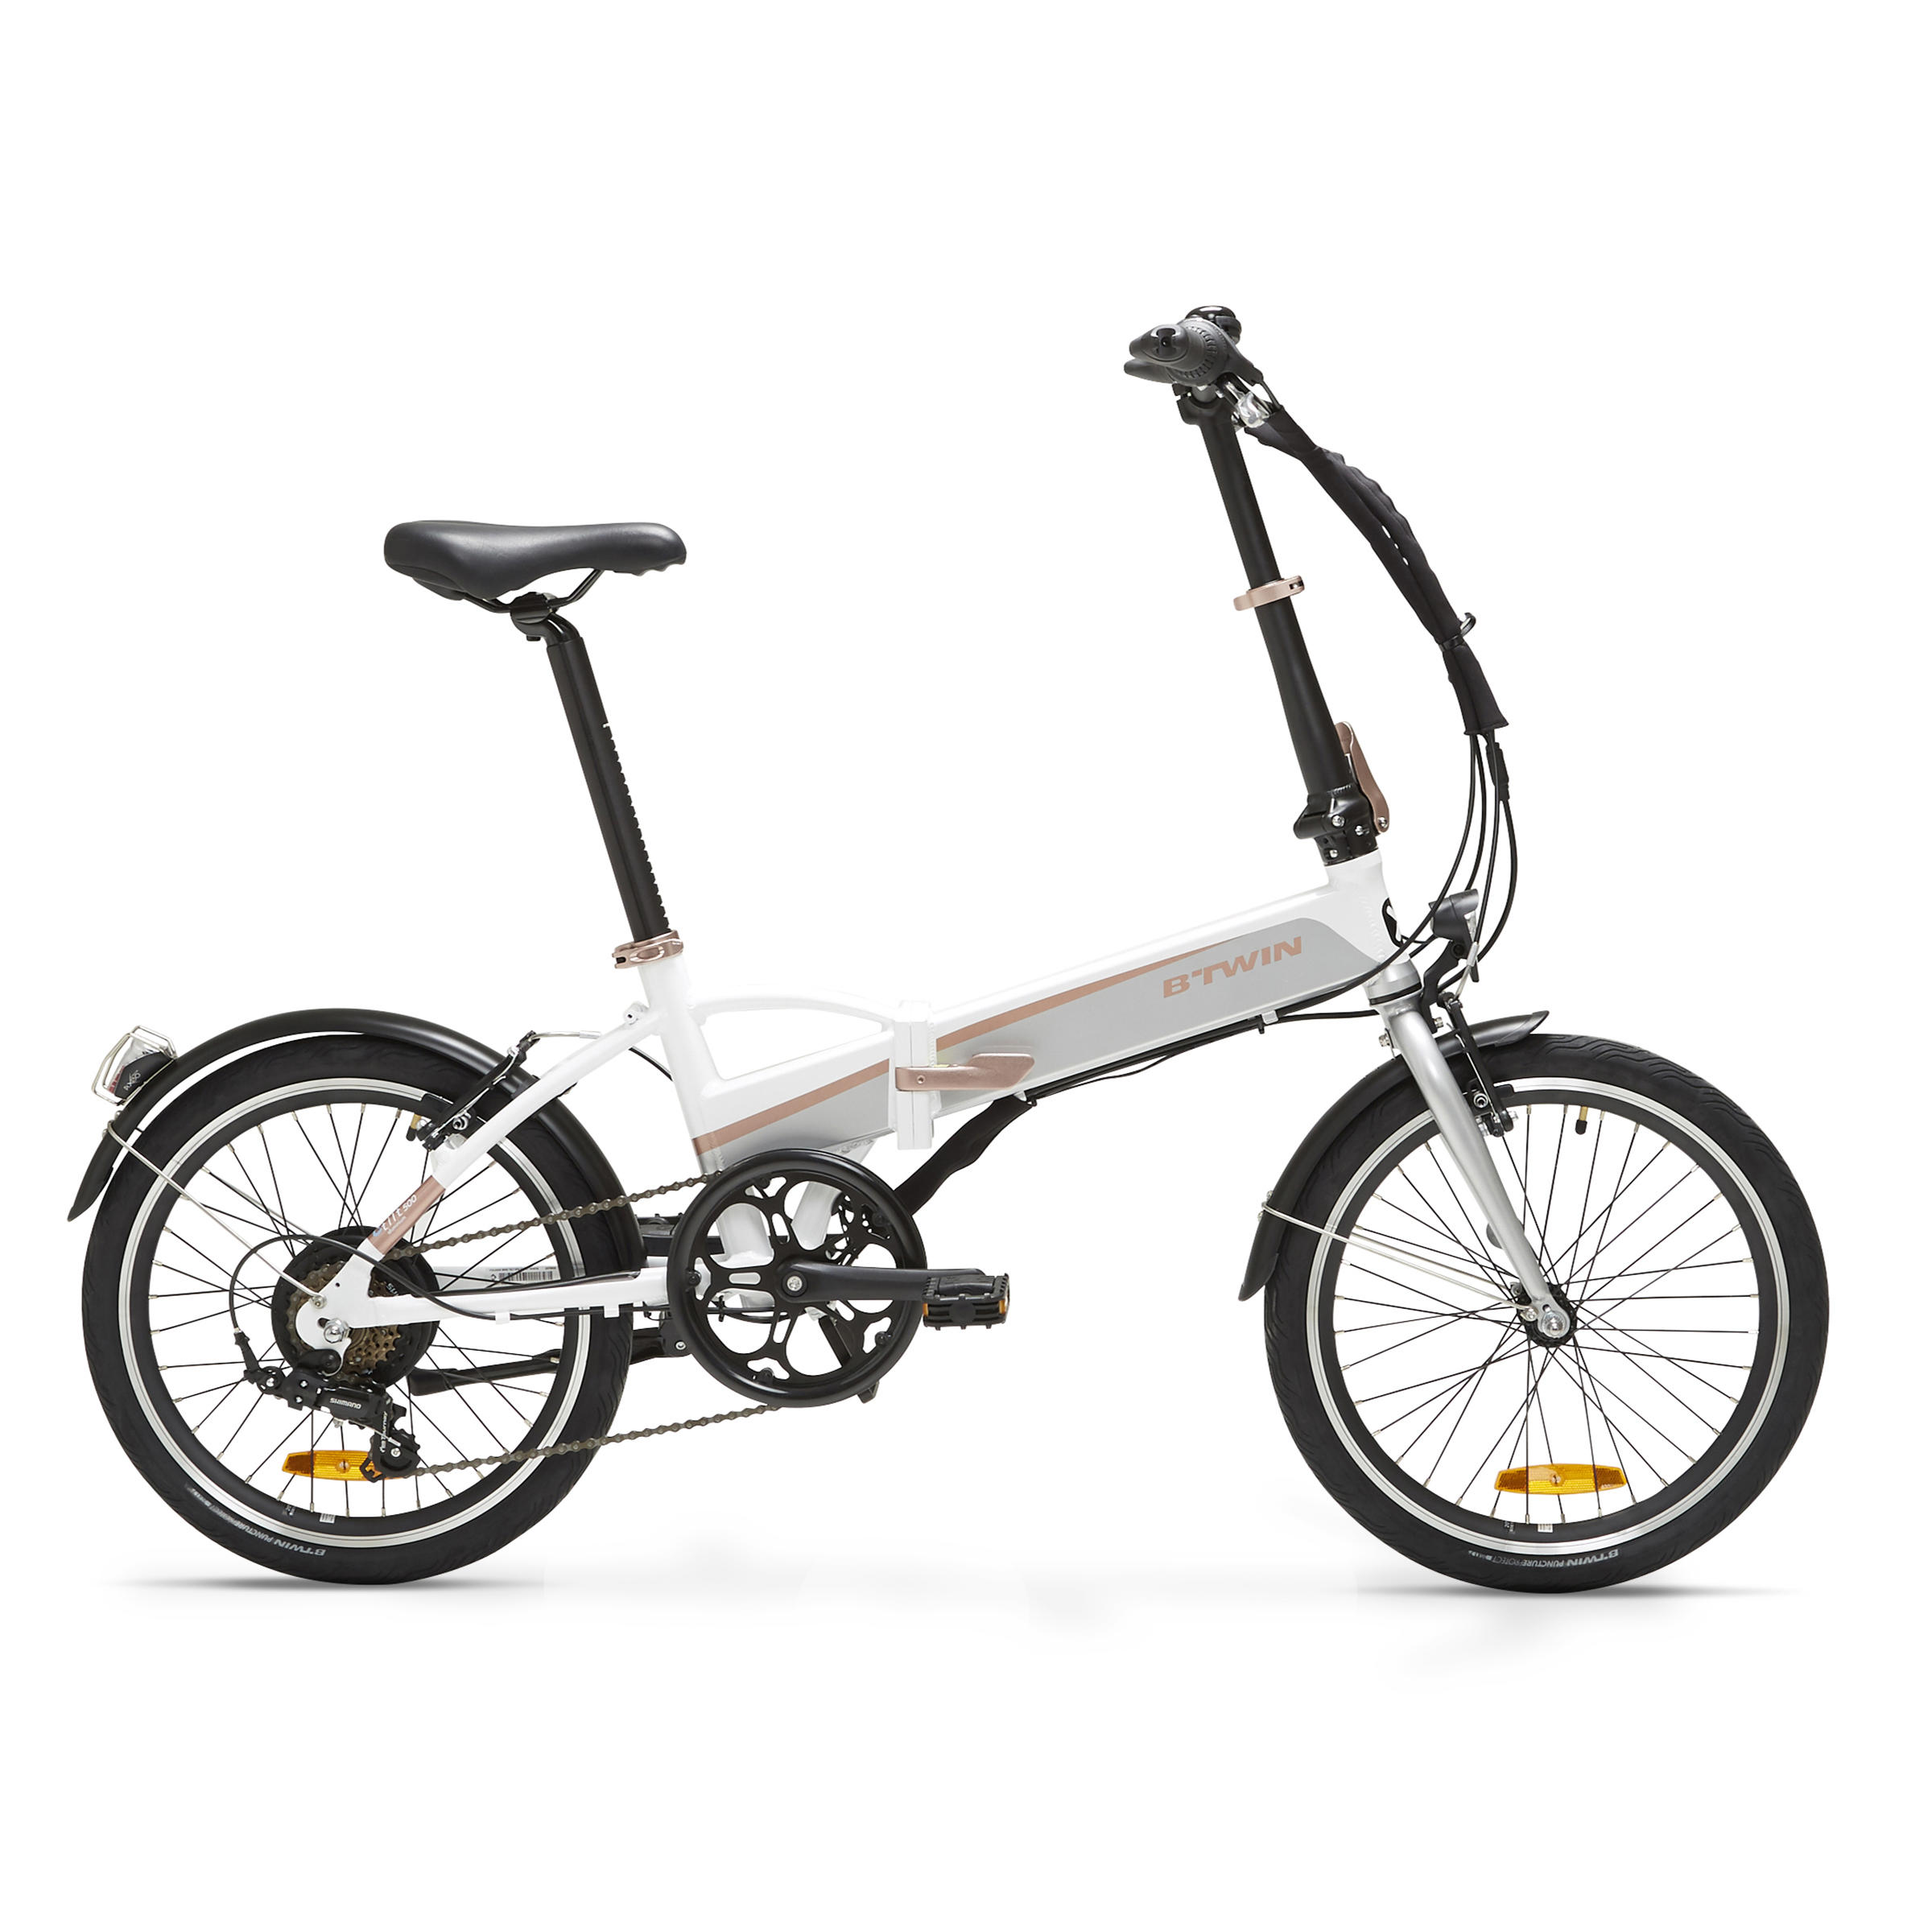 Bicicletă pliabilă cu asistență electrică TILT 500 E Alb La Oferta Online BTWIN imagine La Oferta Online